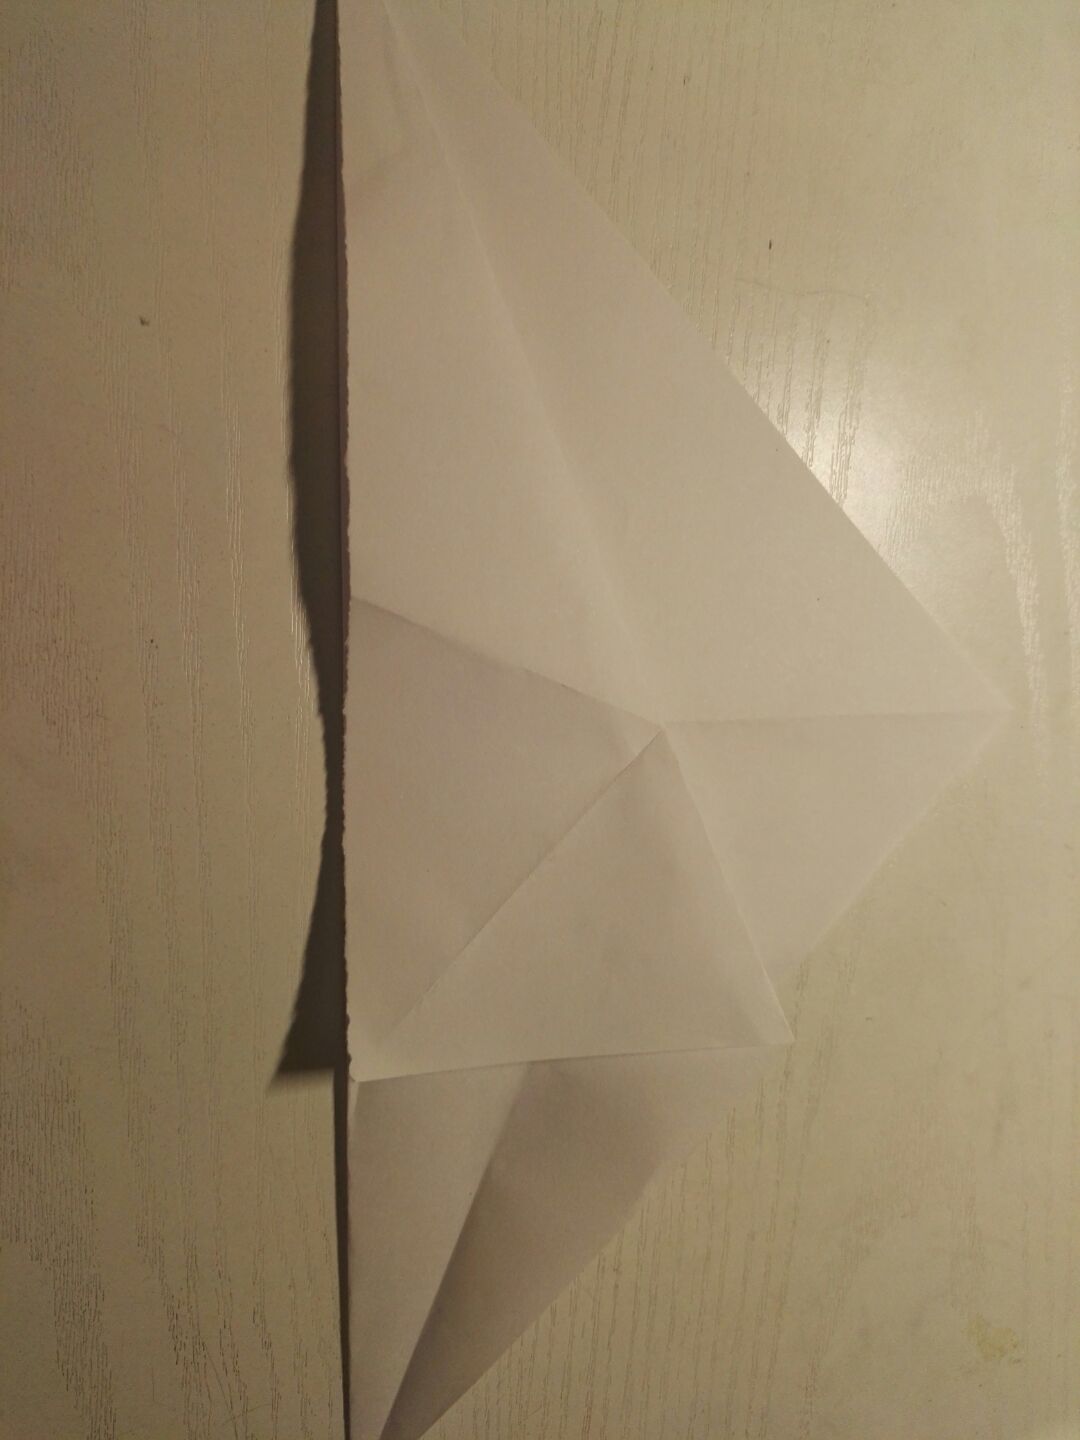 教你折纸香蕉船折纸步骤图解(3)（折纸纸船的折法图解） - 有点网 - 好手艺